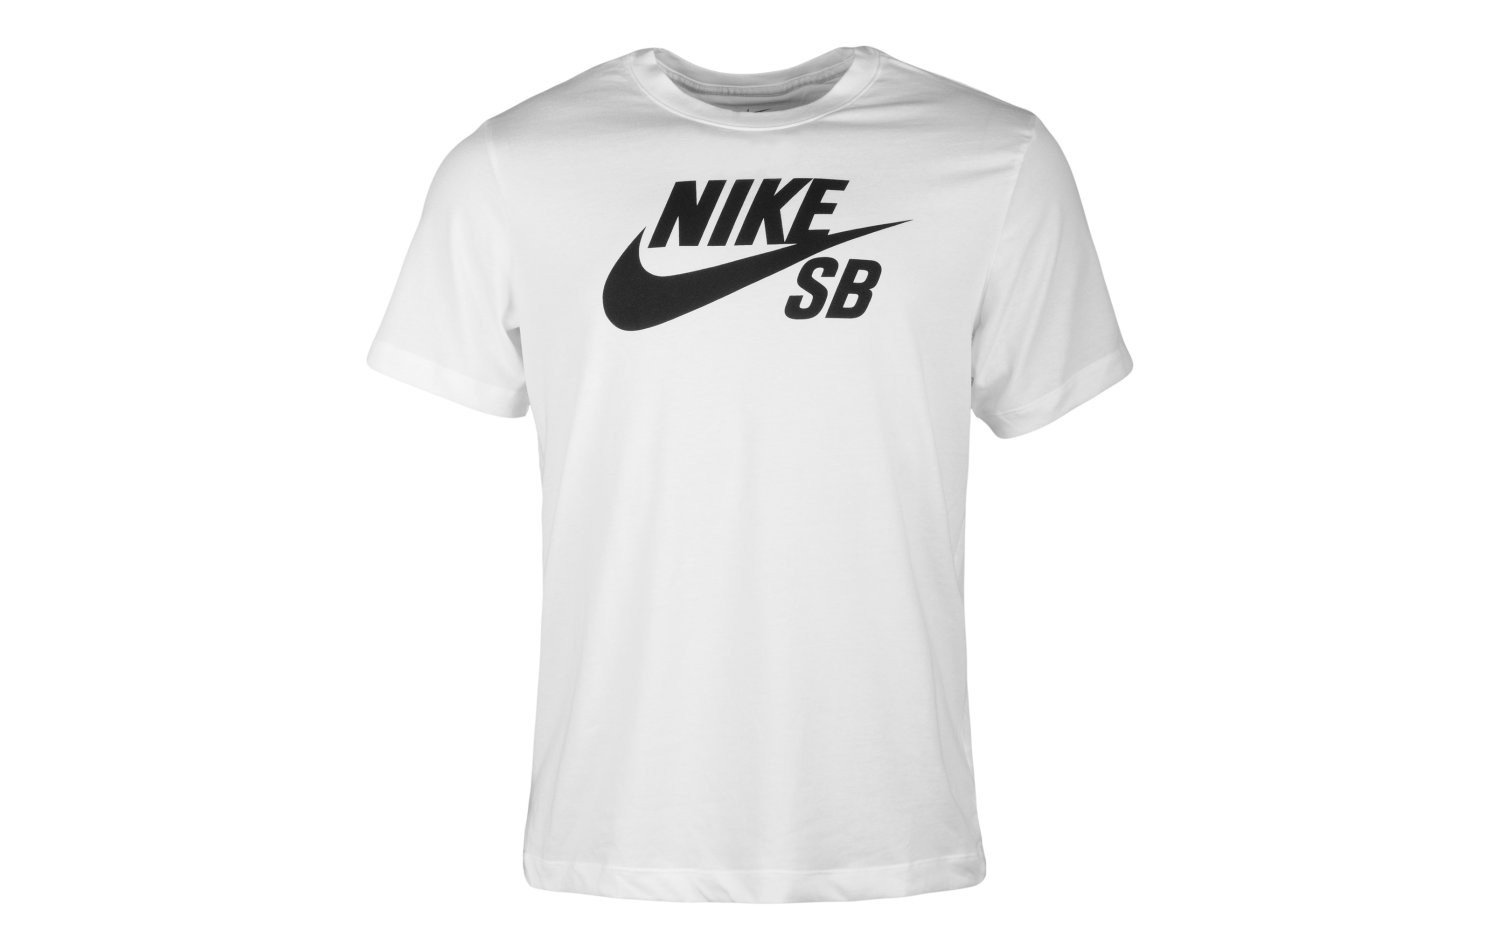 Nike SB Dri-fit S/S (AR4209-100)